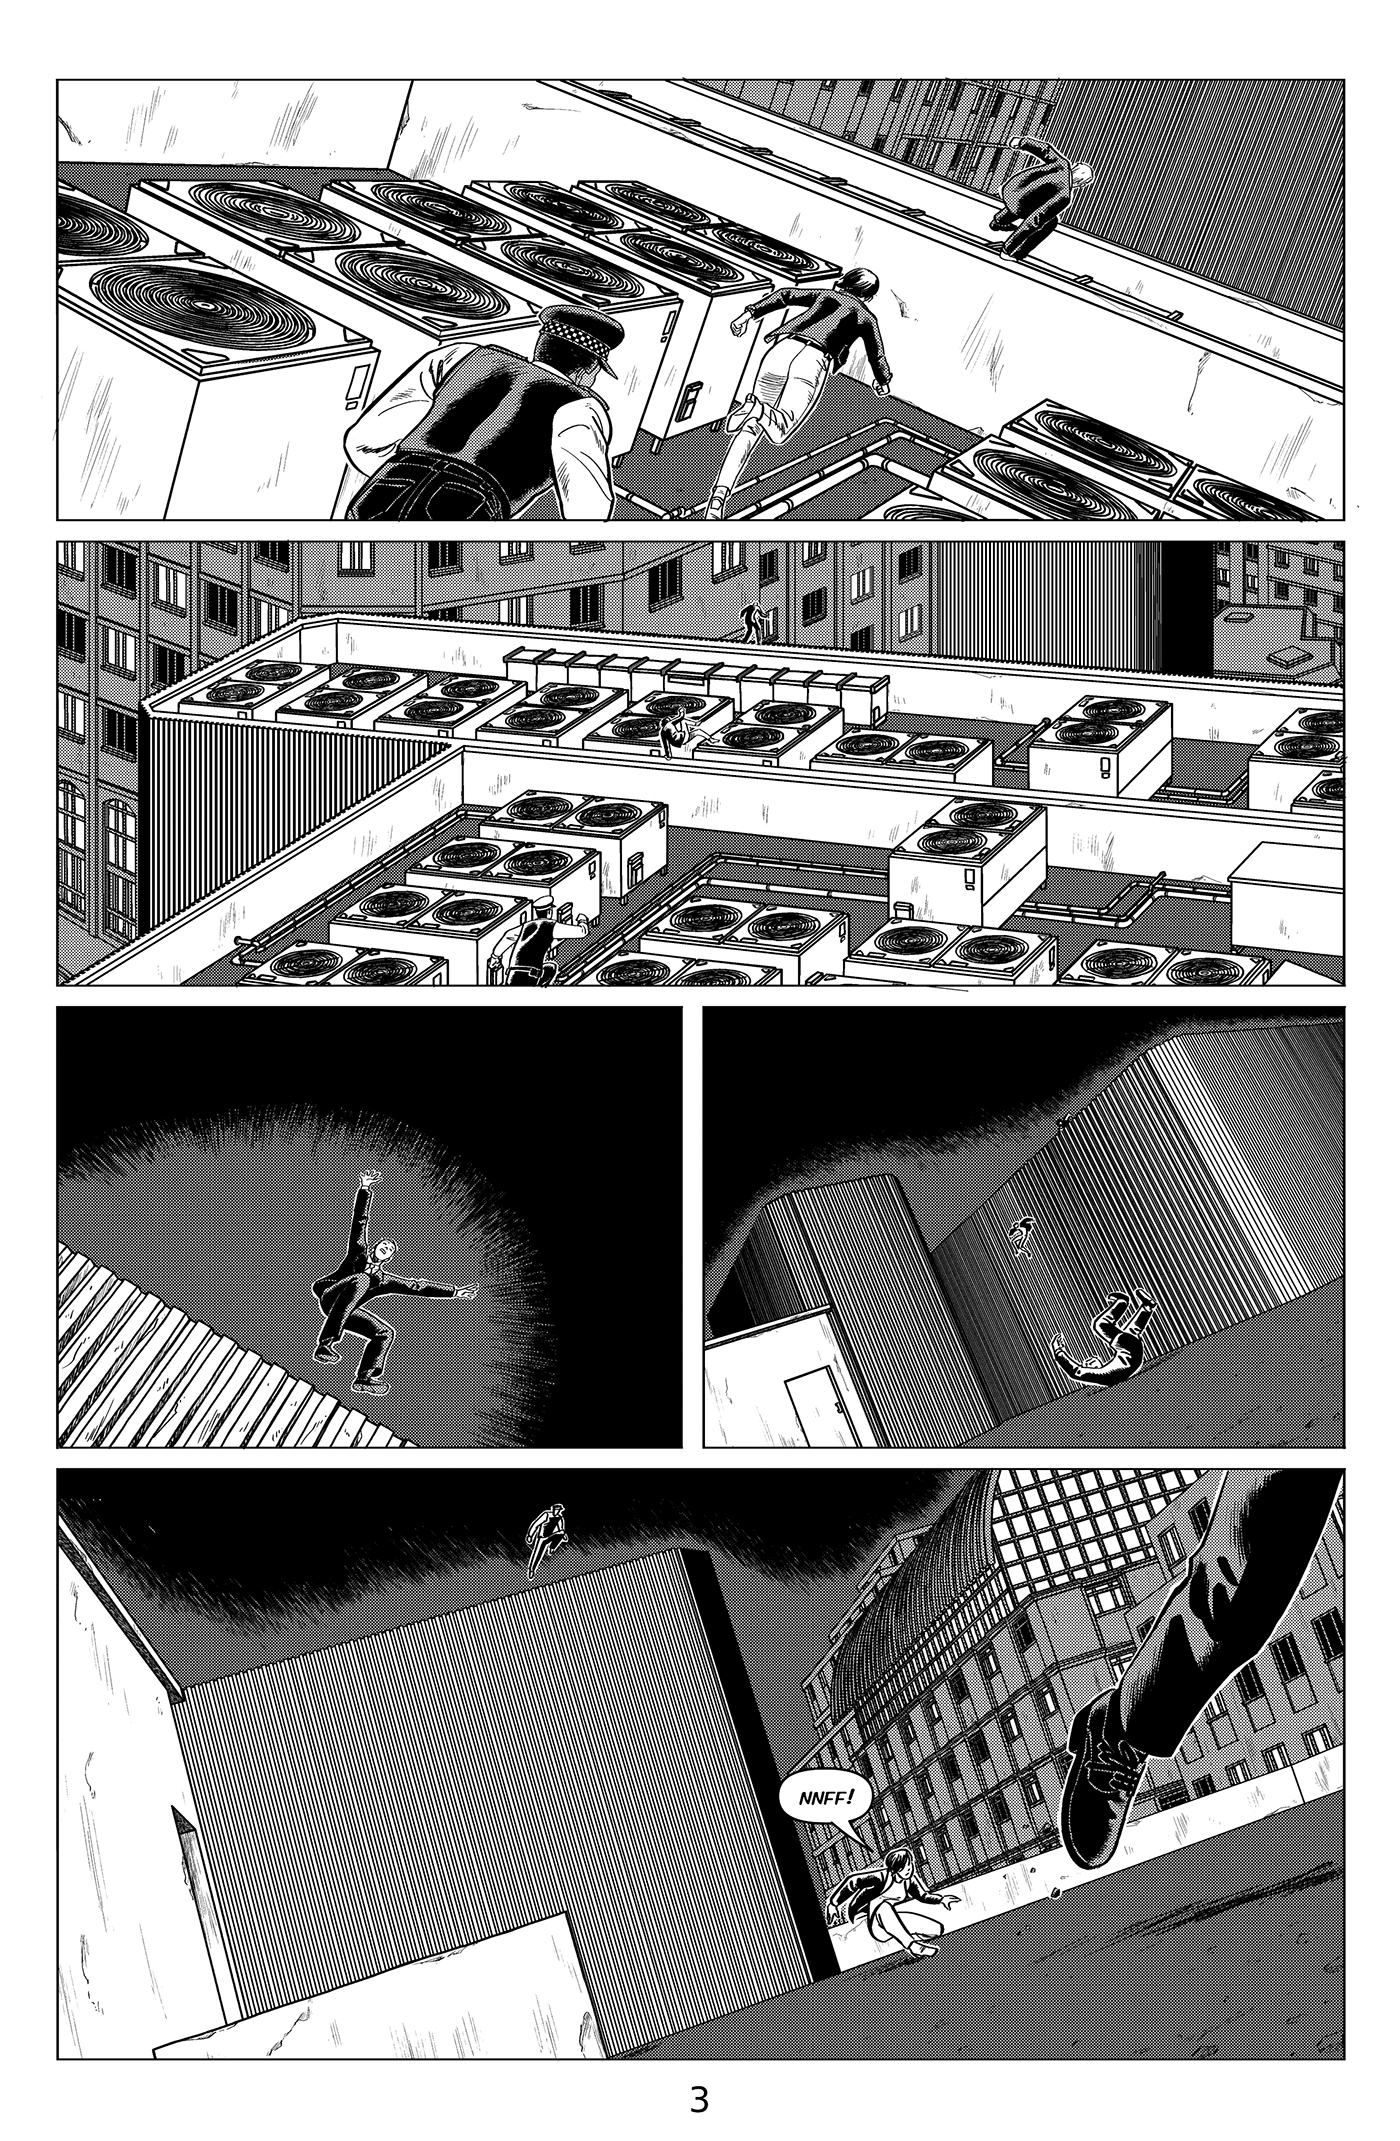 comics Titan Comics London monster police battle suit suit rooftop fight Transformation